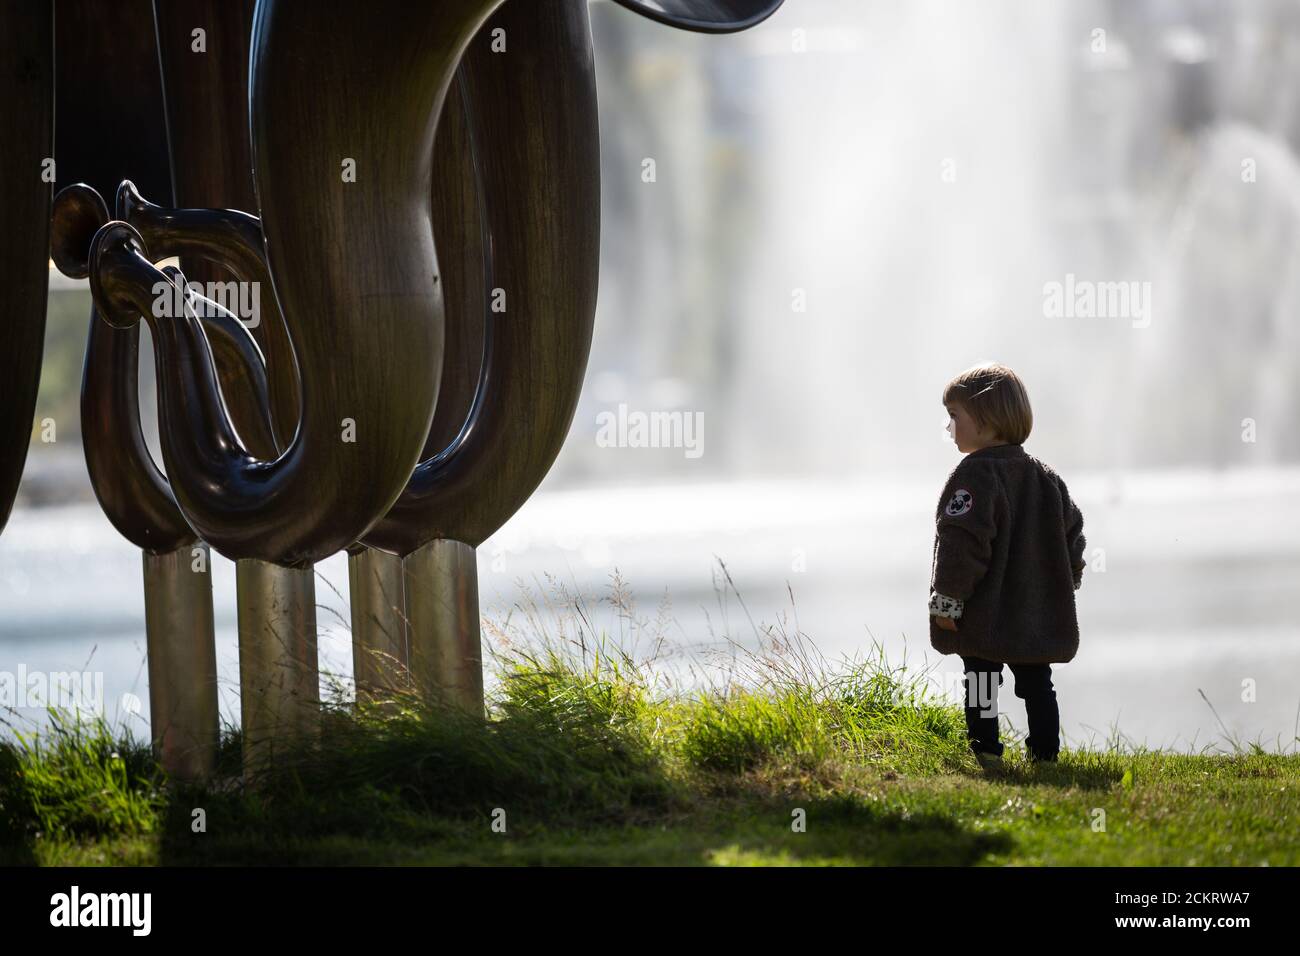 Petit garçon à côté d'une grande sculpture d'art, fontaine derrière Banque D'Images